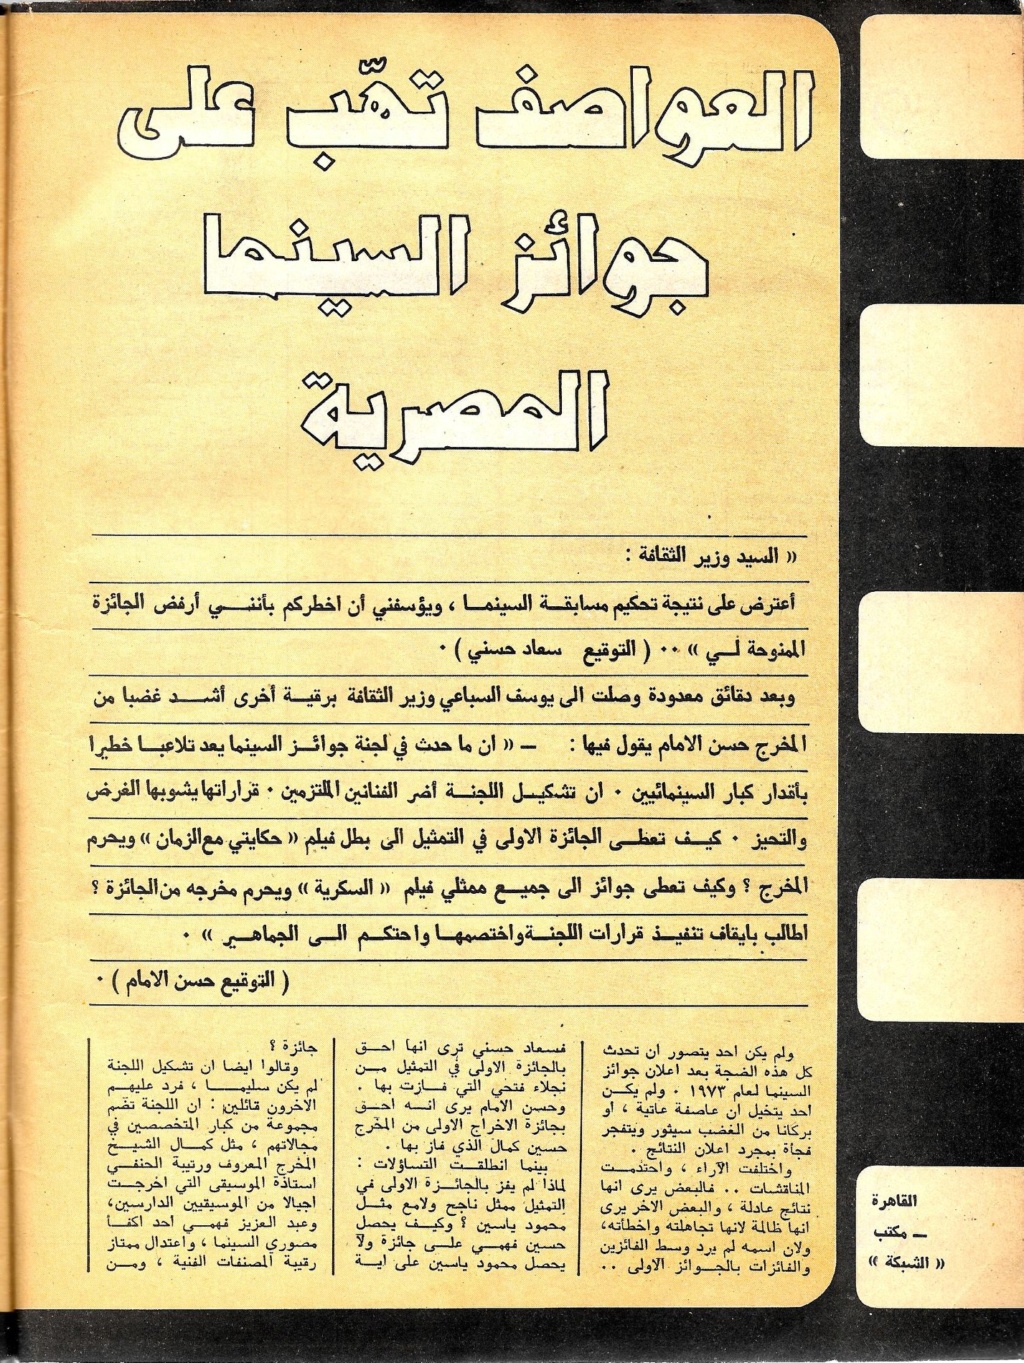 مقال صحفي : العواصف تهب على جوائز السينما المصرية 1974 م 1406